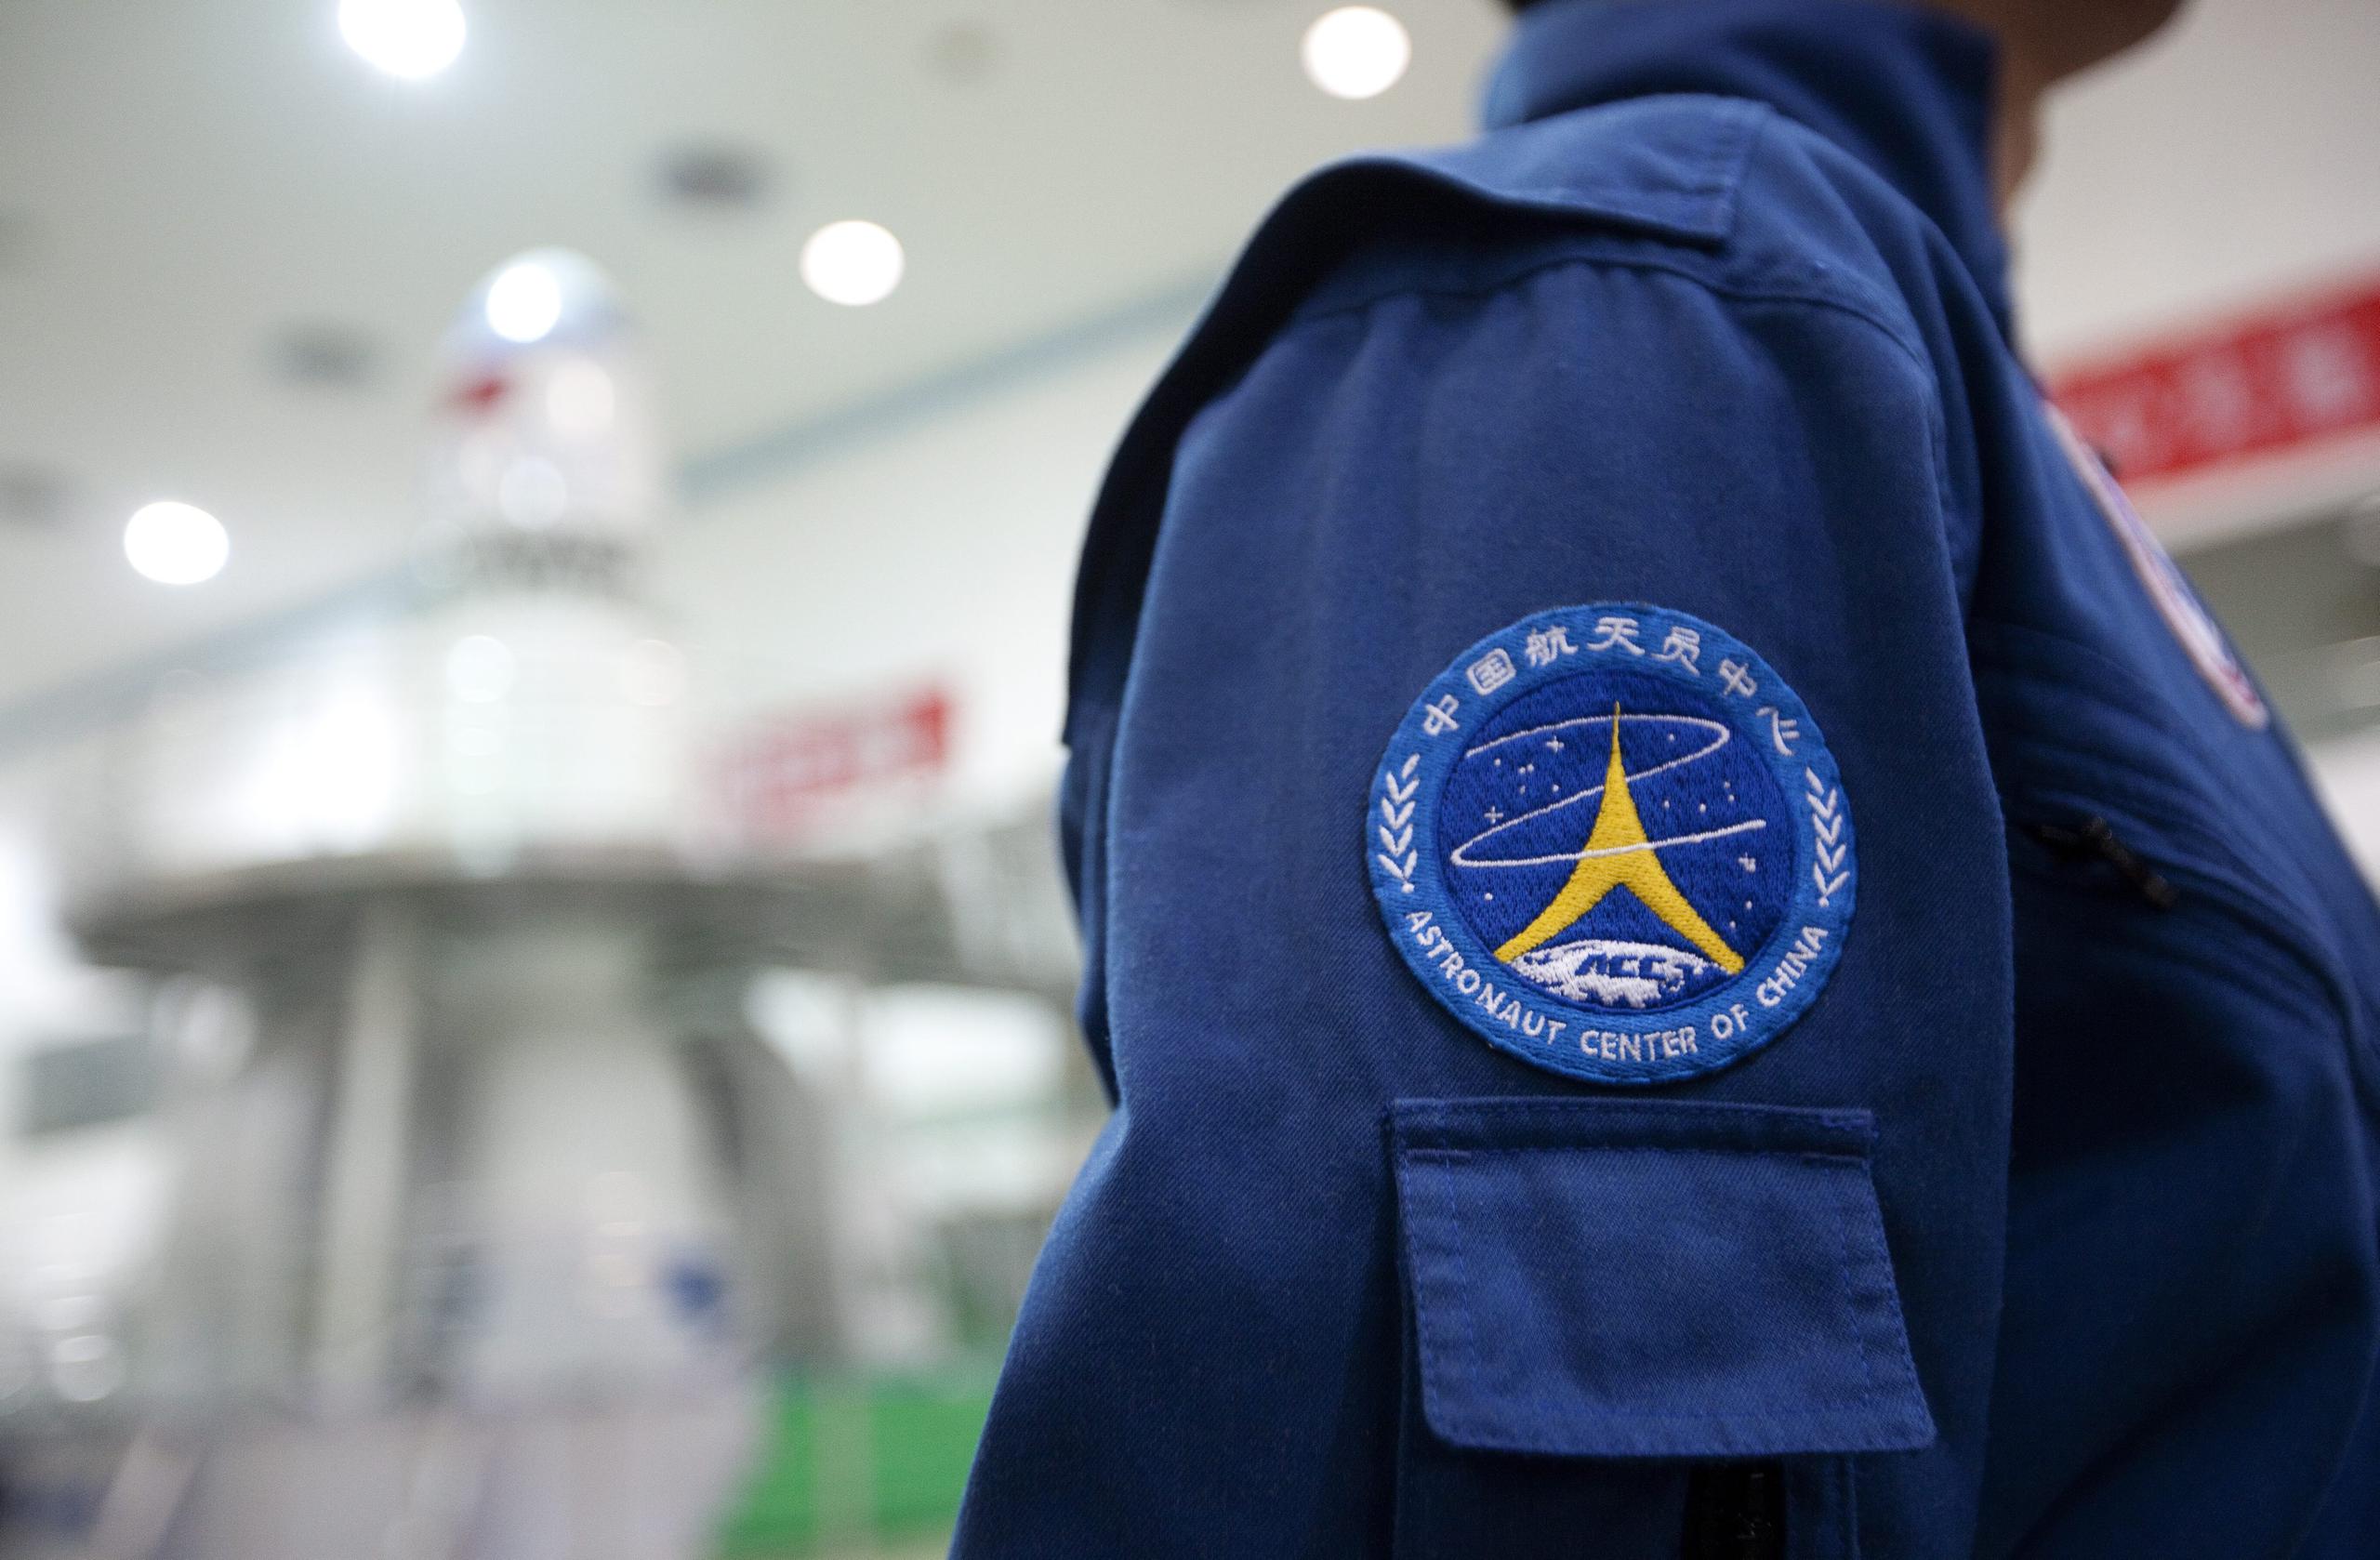 Detalle del logo de la de la estación espacial china Tiangong-1. EPA/HOW HWEE YOUNG
